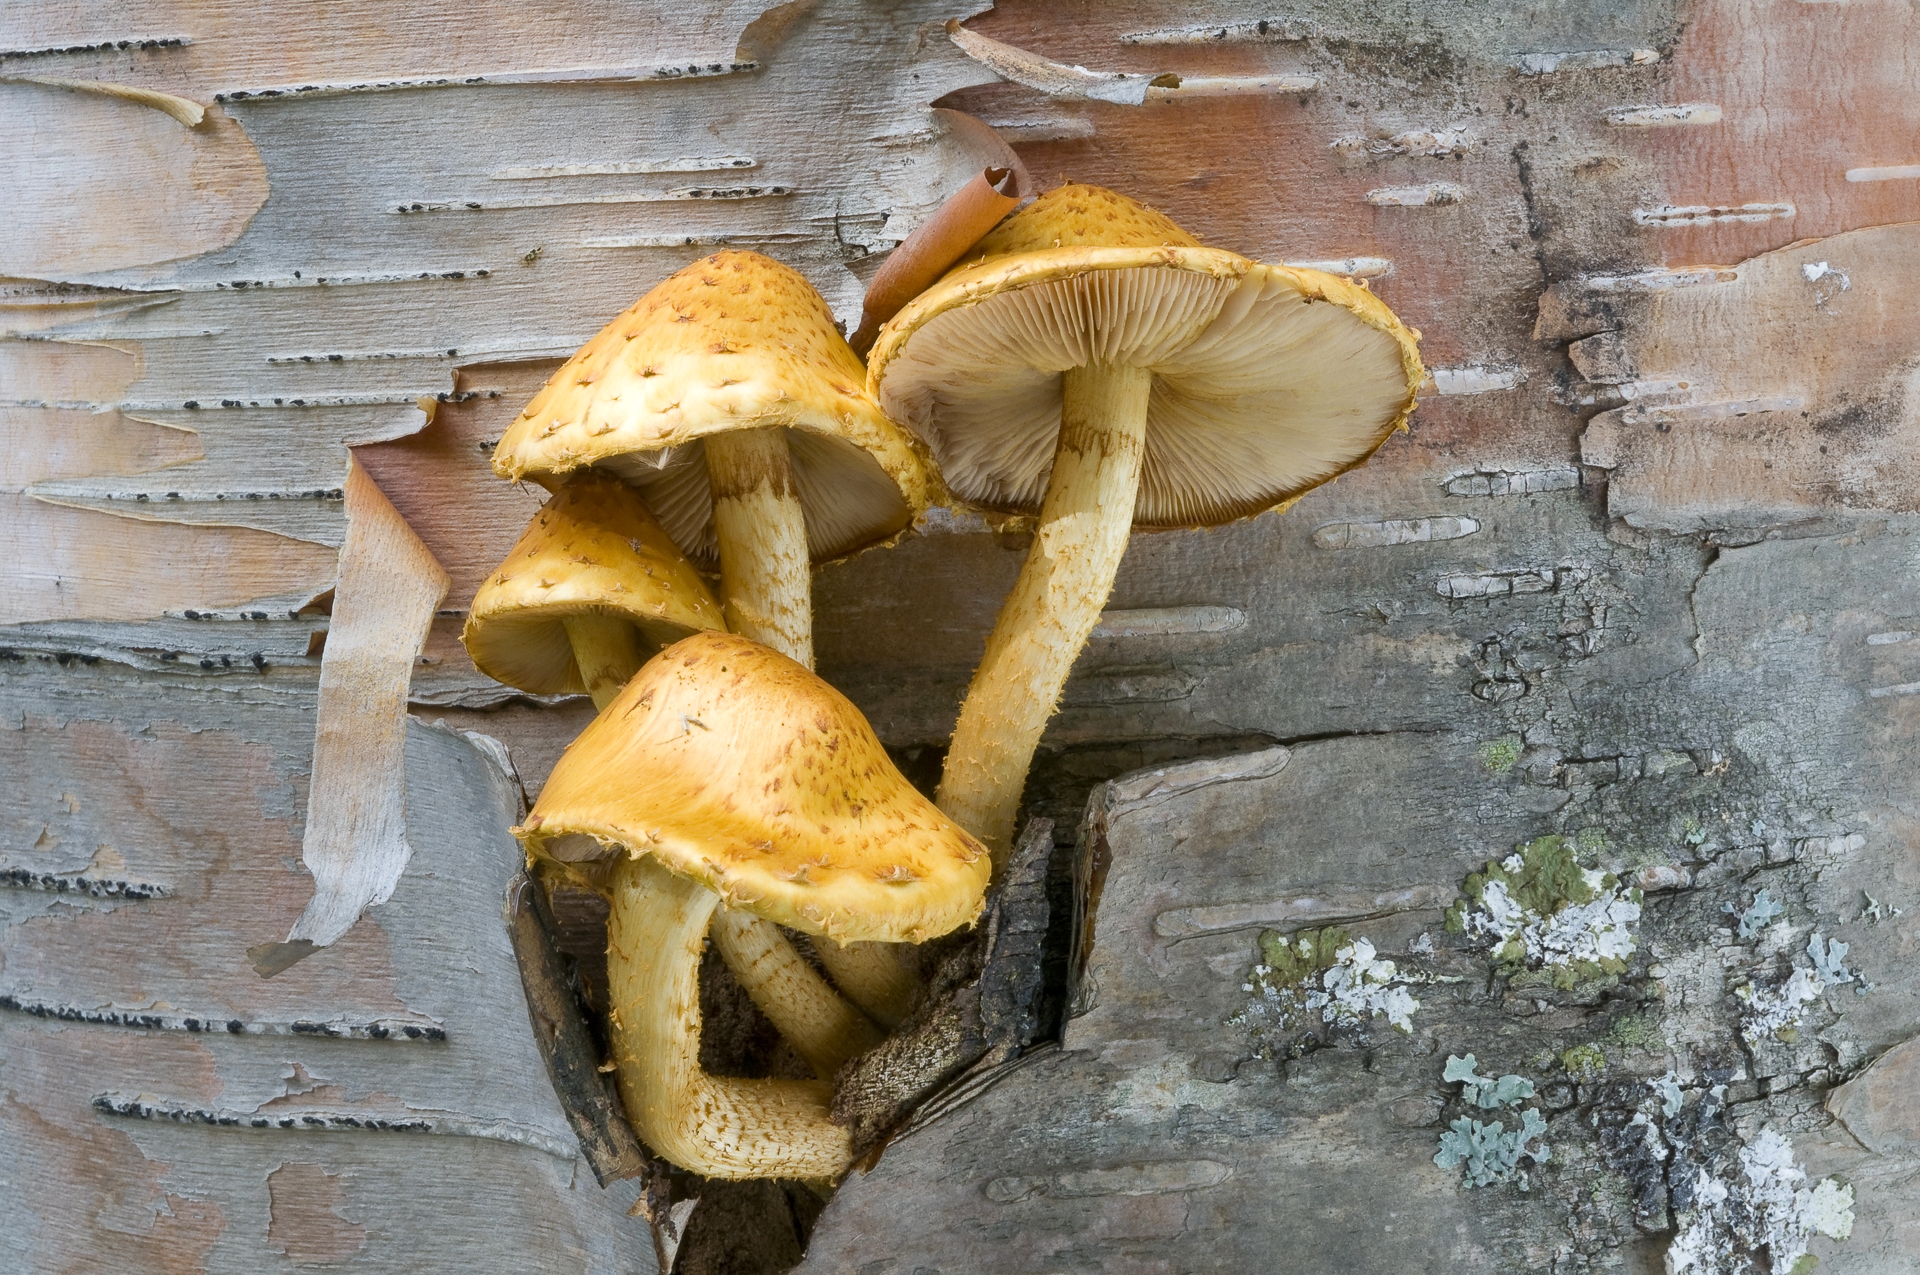 Pholiota mushrooms growing on birch